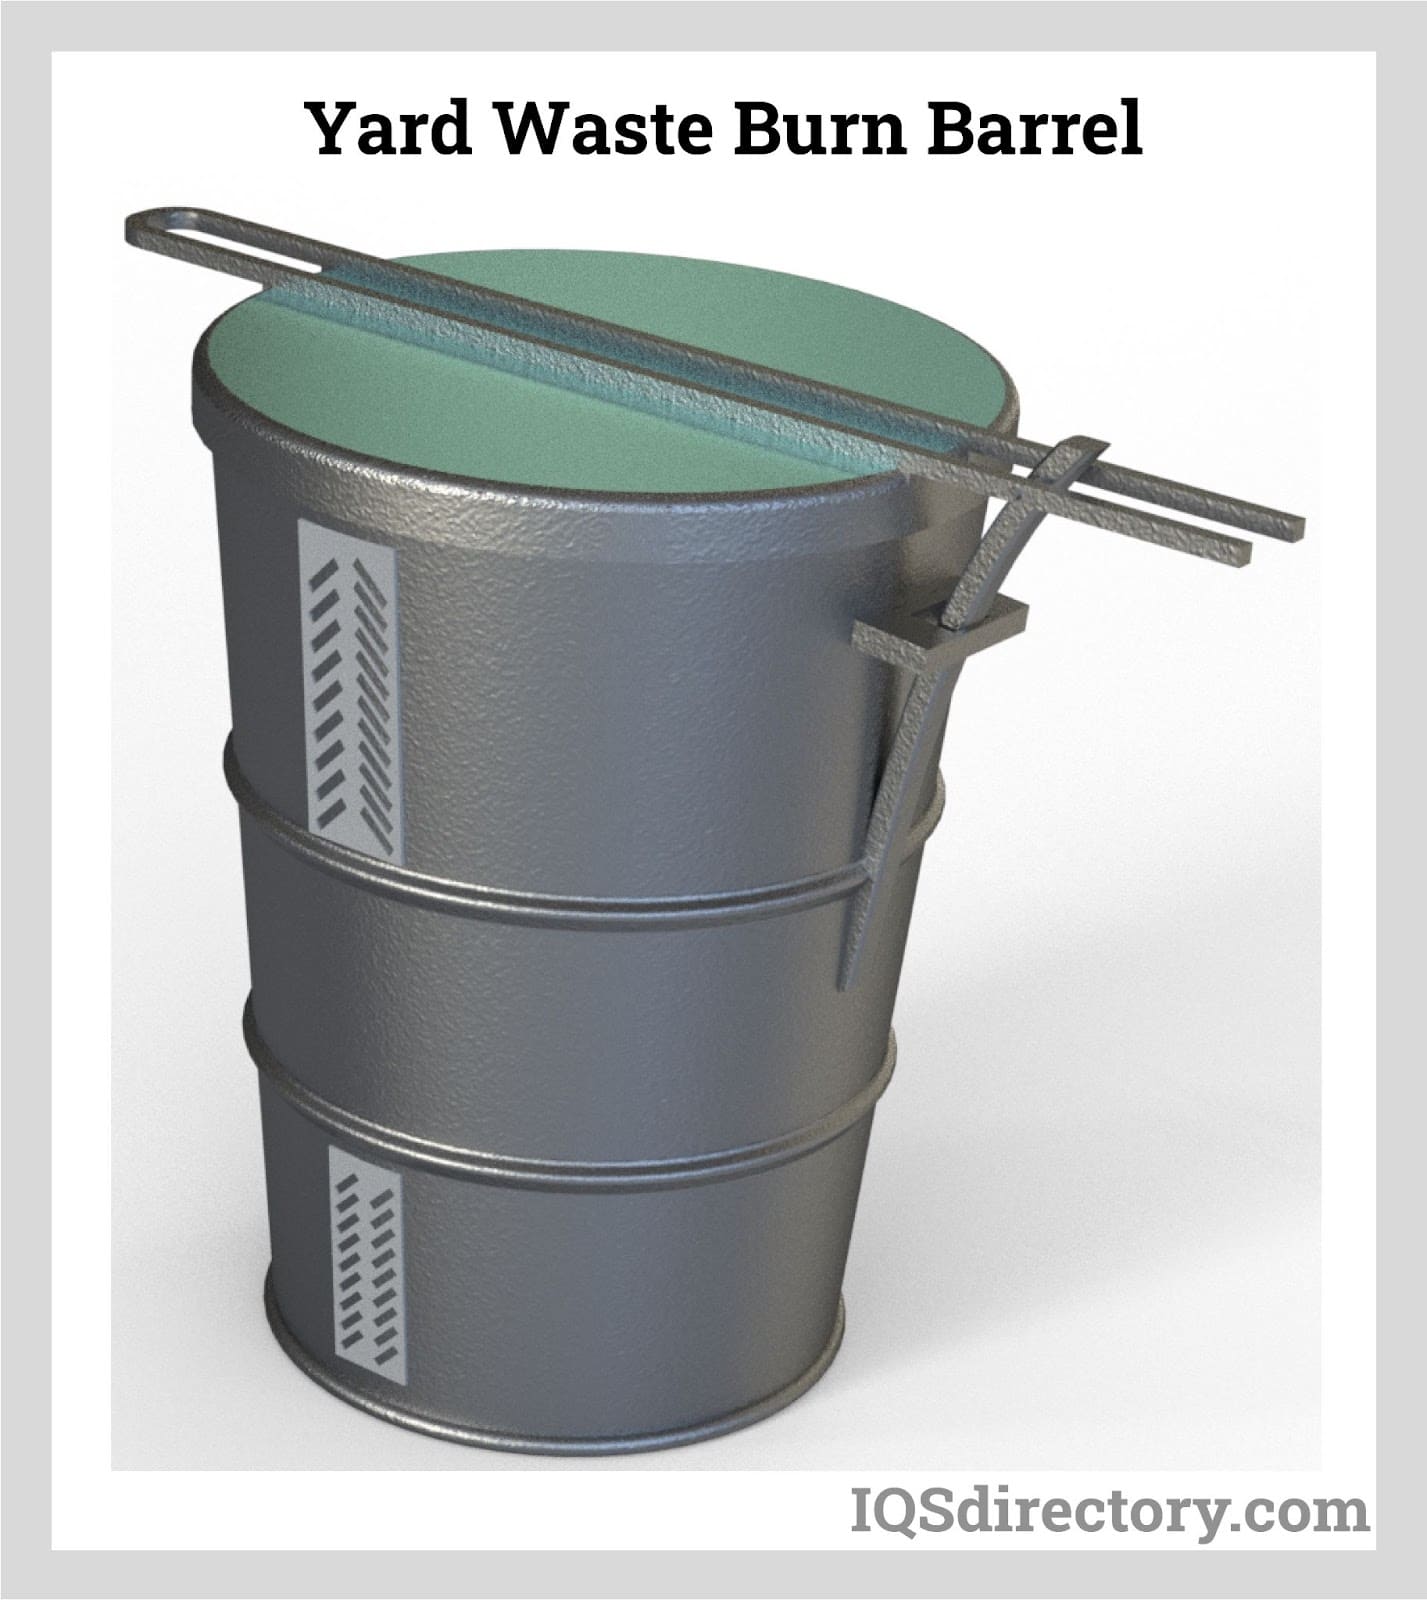 Yard Waste Burn Barrel